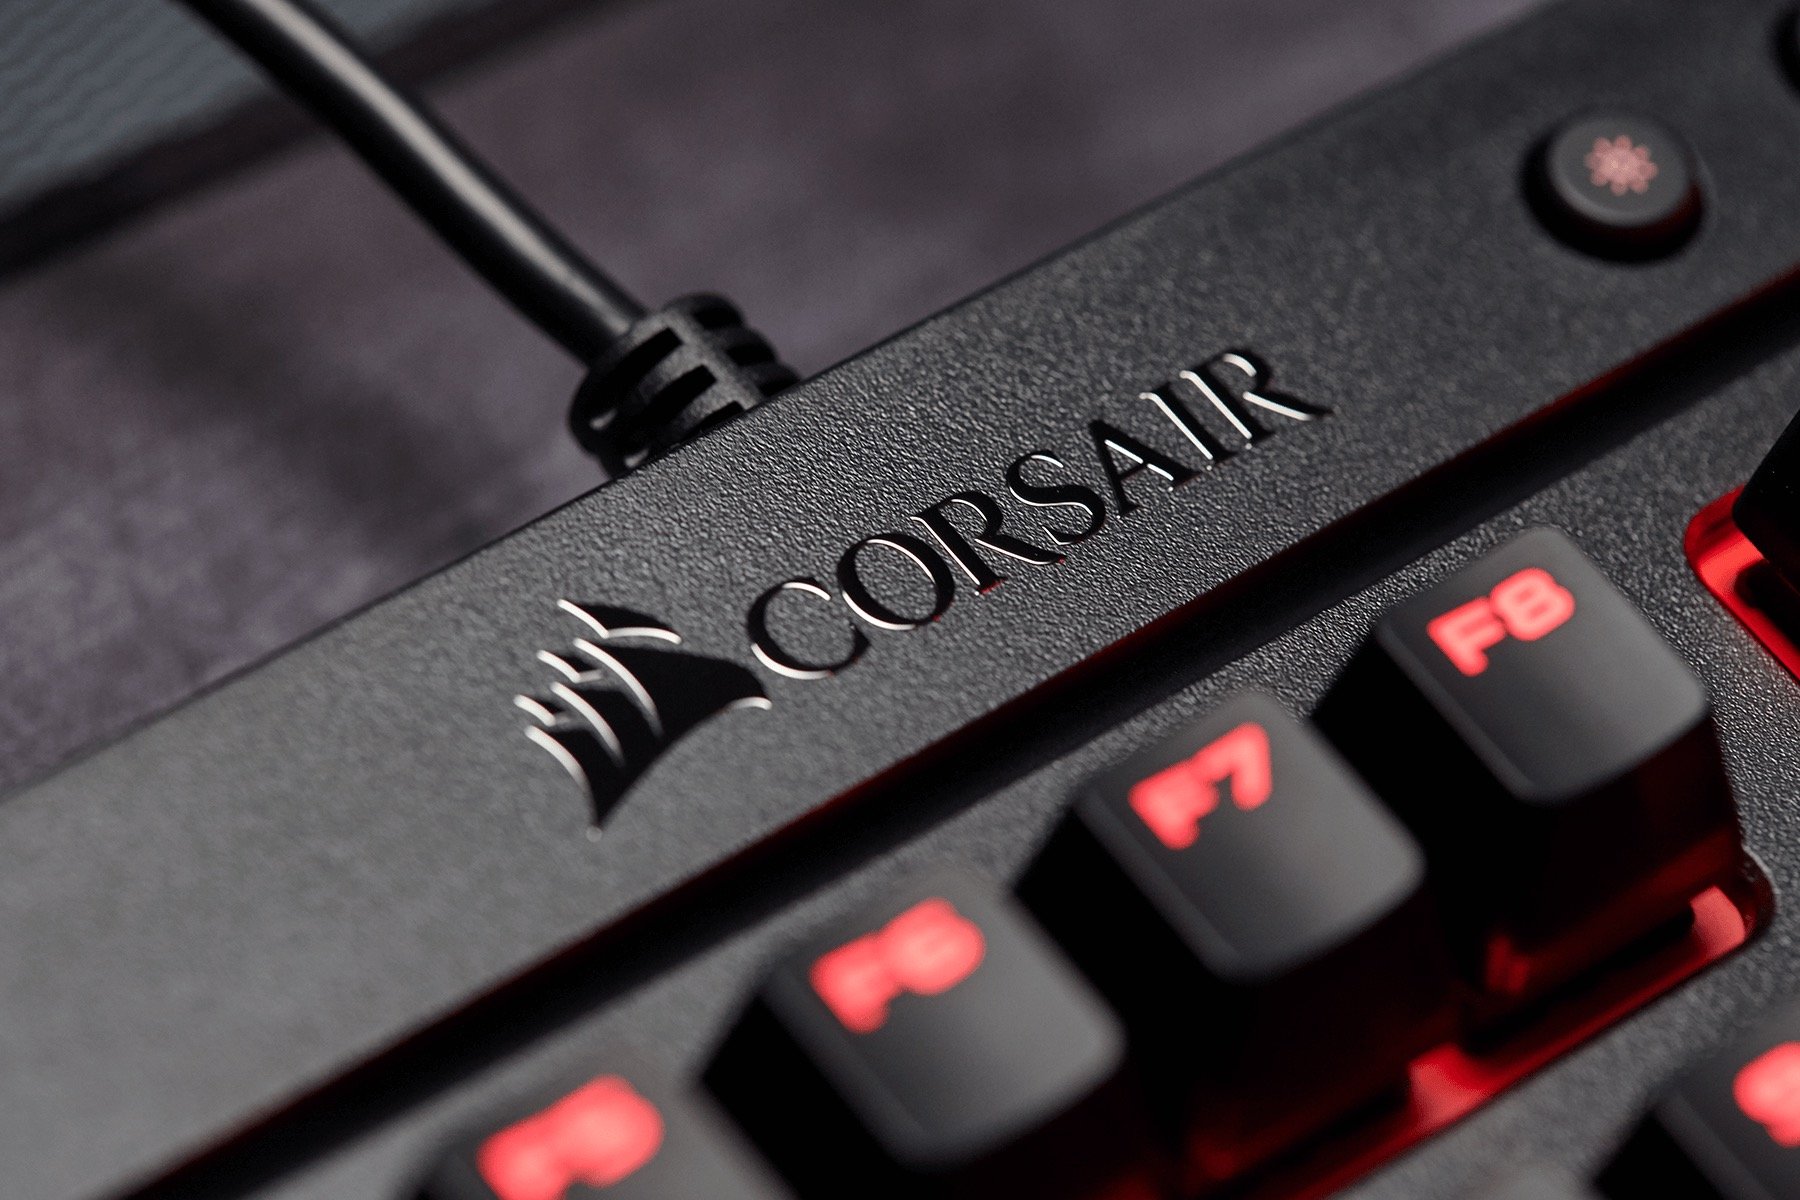 Image 16 : K63 : premier clavier gaming Corsair Cherry MX à moins de 100 euros